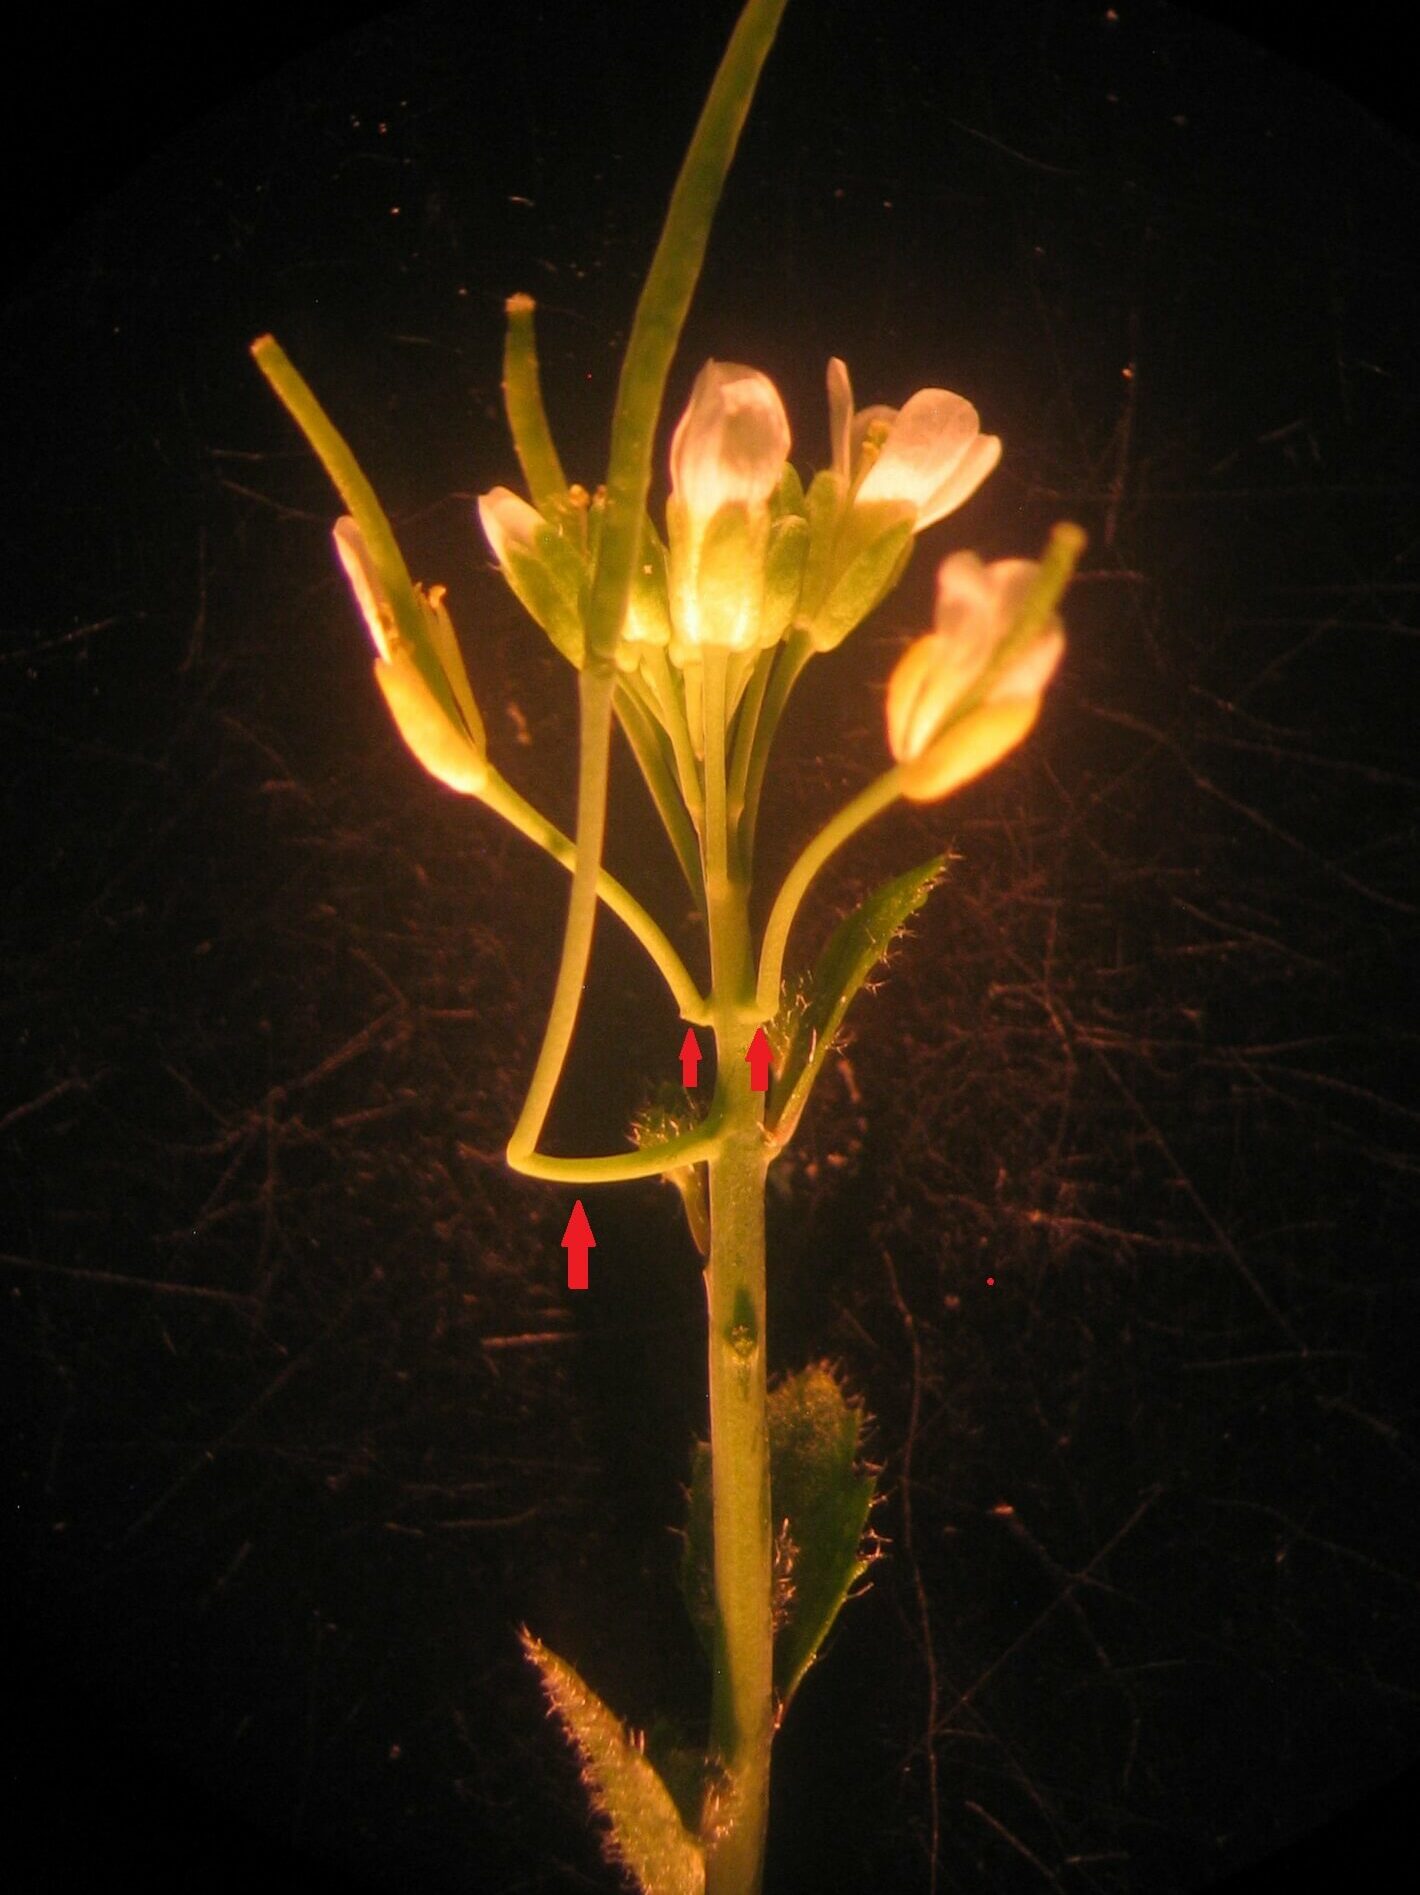 拟南芥的悬臂结构是野生型拟南芥在短日照条件下延迟开花而形成的一种新结构。